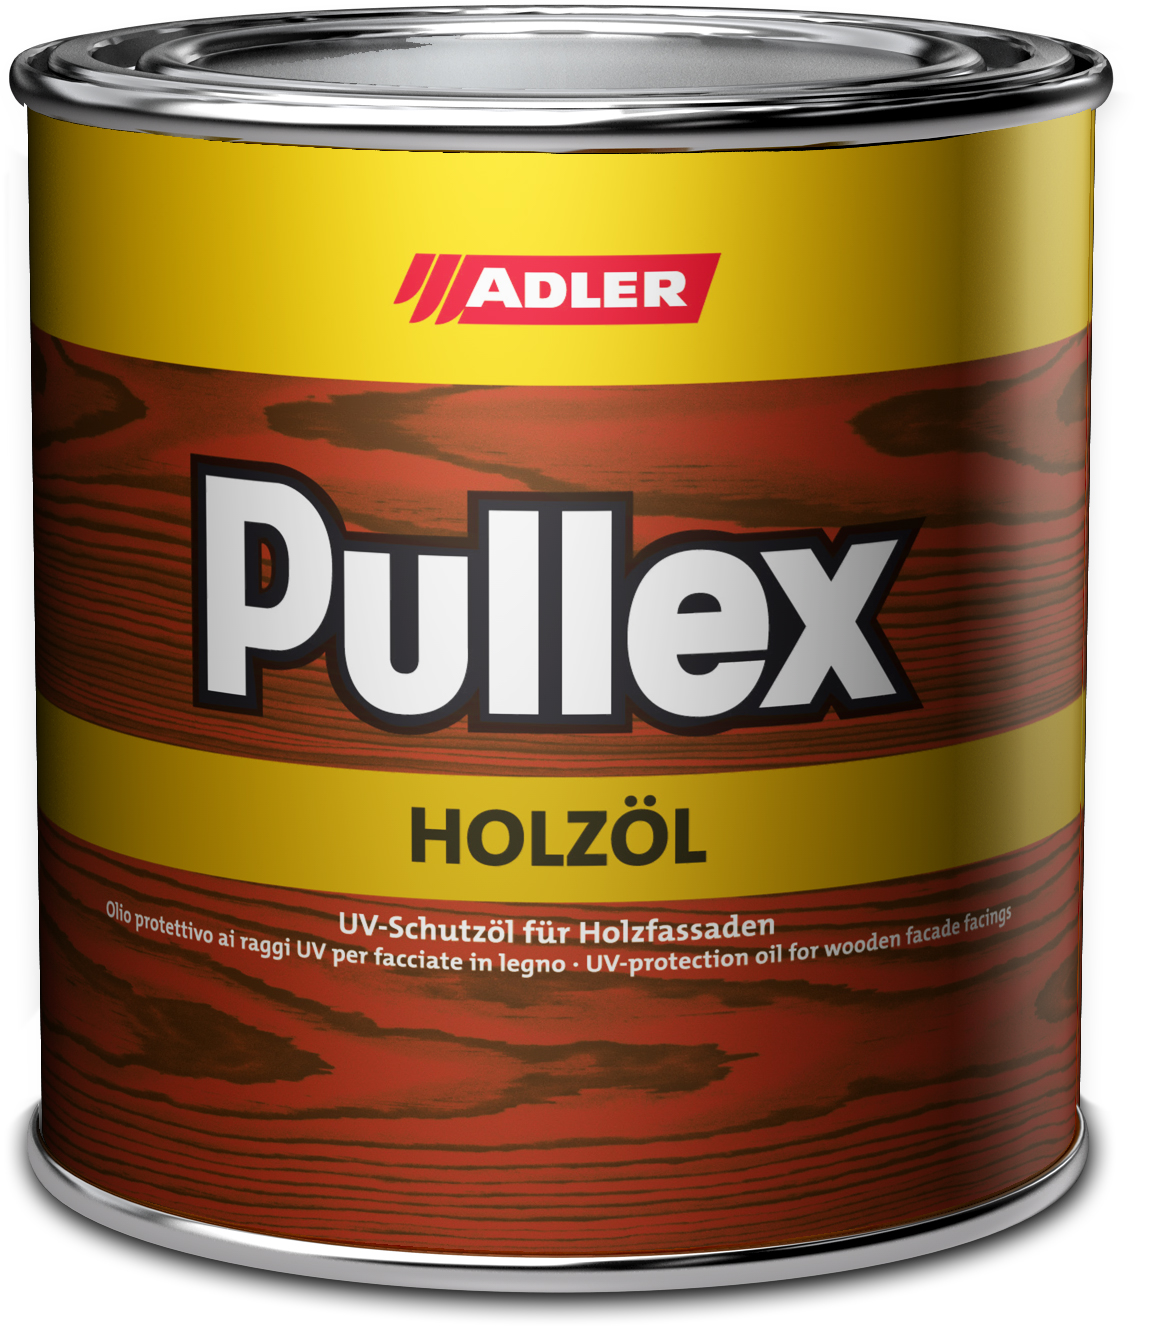 ADLER PULLEX HOLZÖL - UV ochranný olej na drevodomy a drevené obloženie LW 08/5 - landstreicher 0,75 L